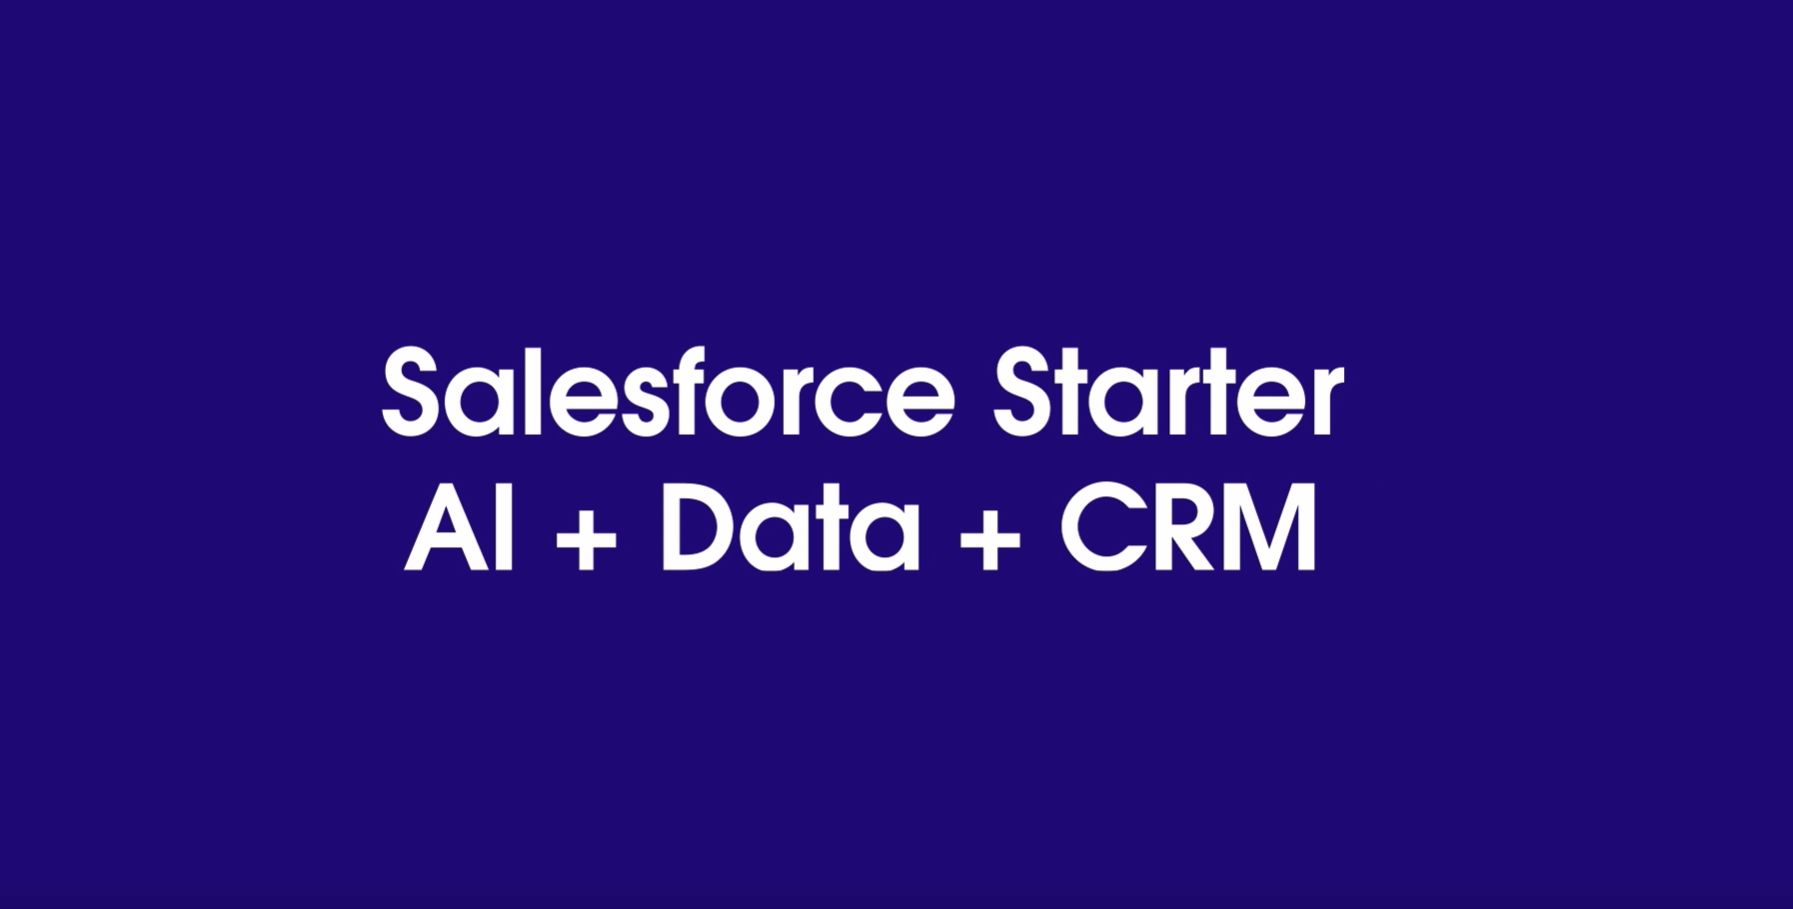 Salesforce Starter